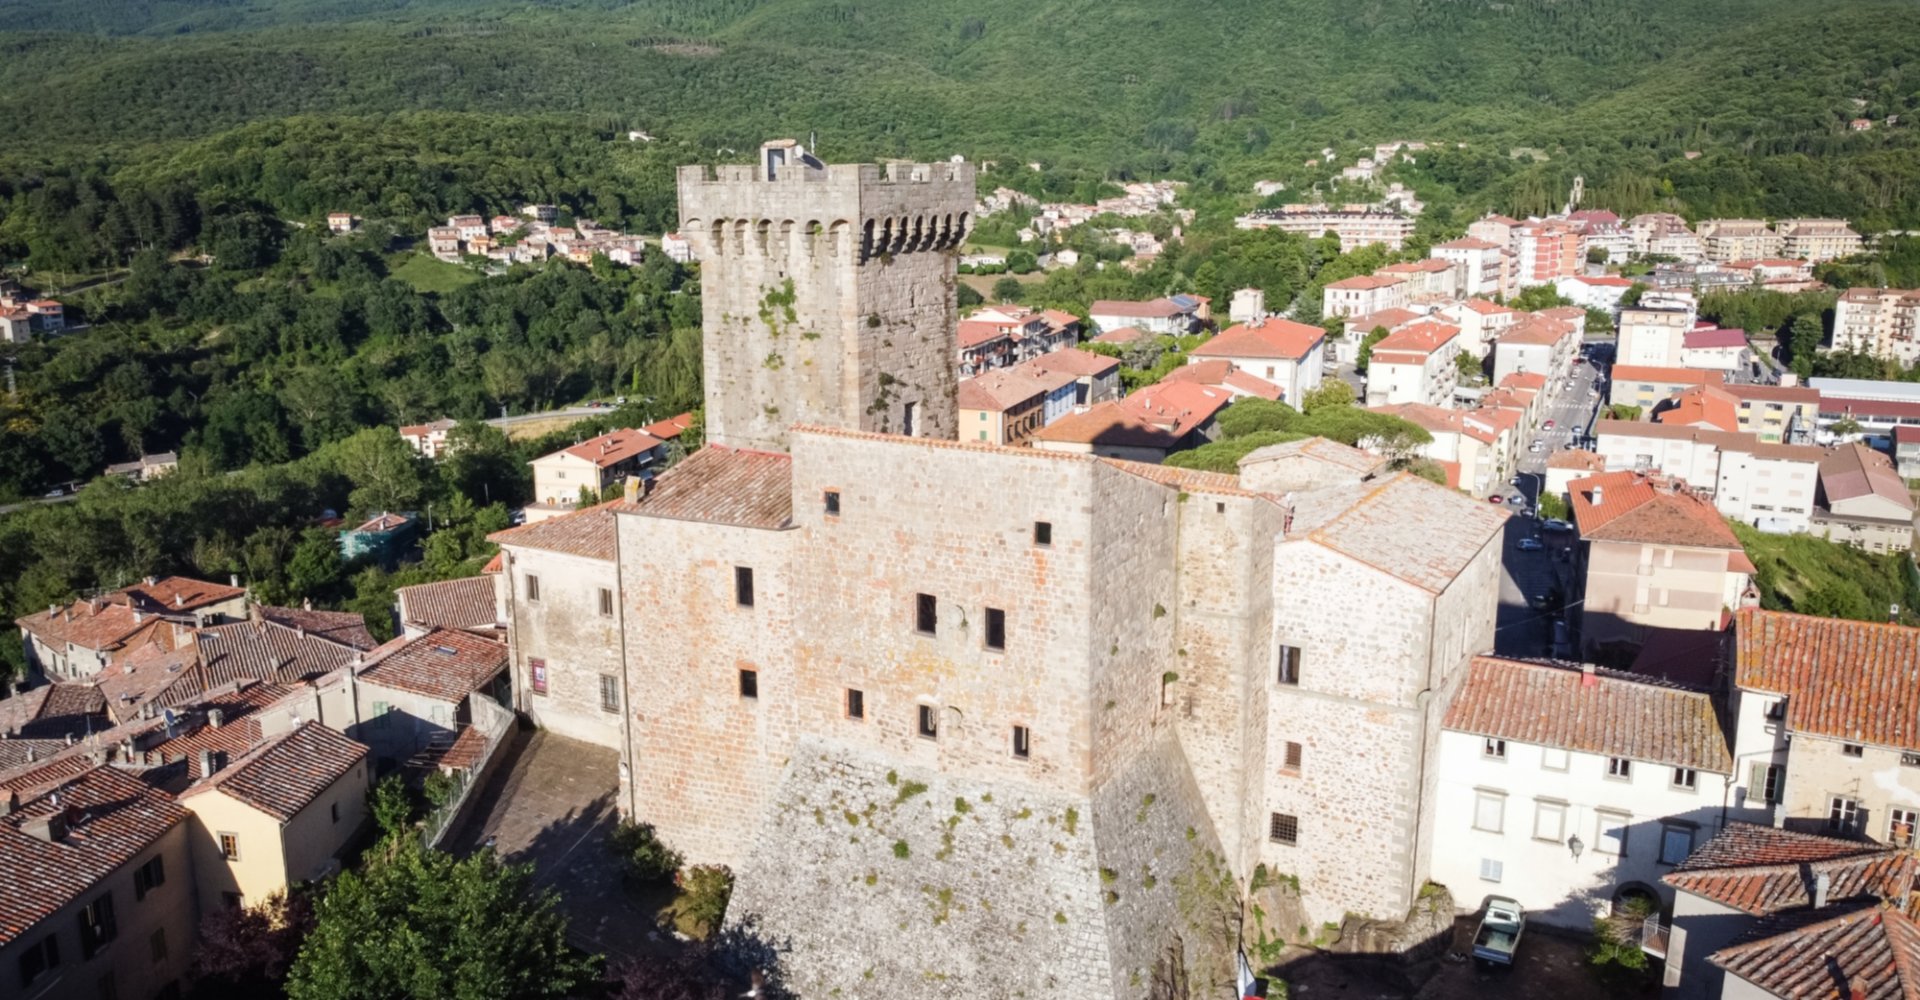 Aldobrandesco Castle of Arcidosso